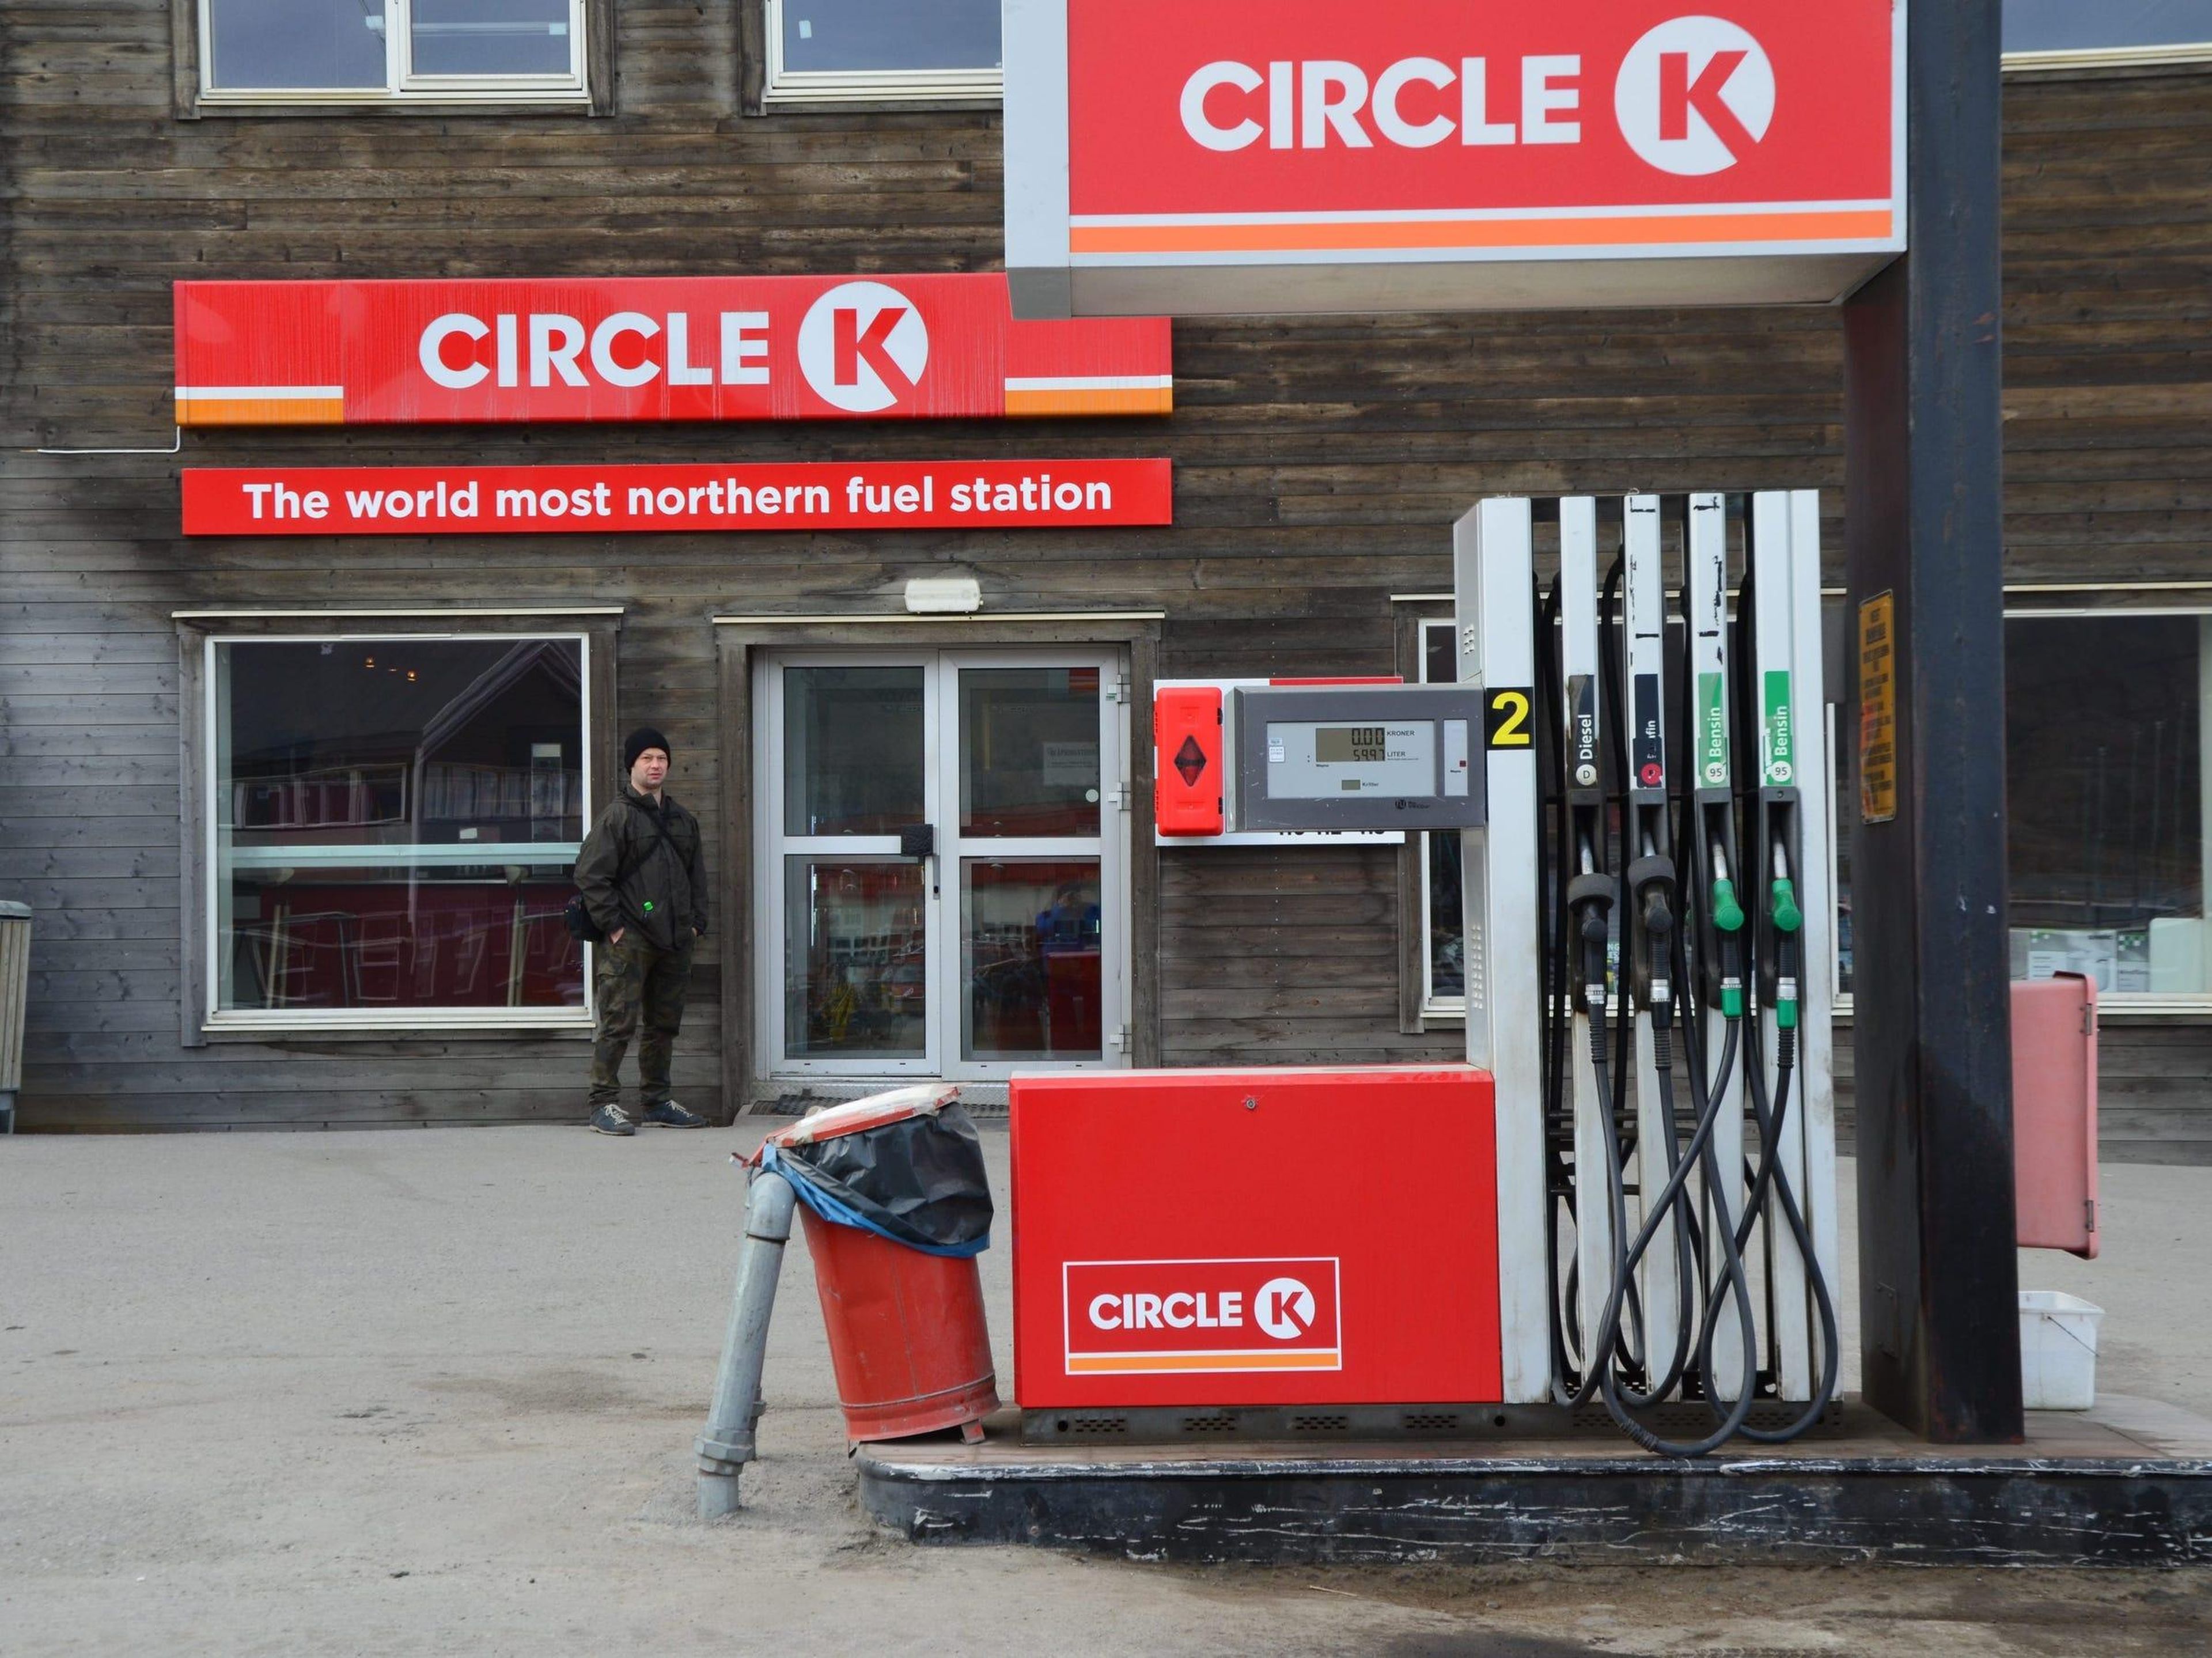 El letrero dice 'La estación de combustible más al norte del mundo'.